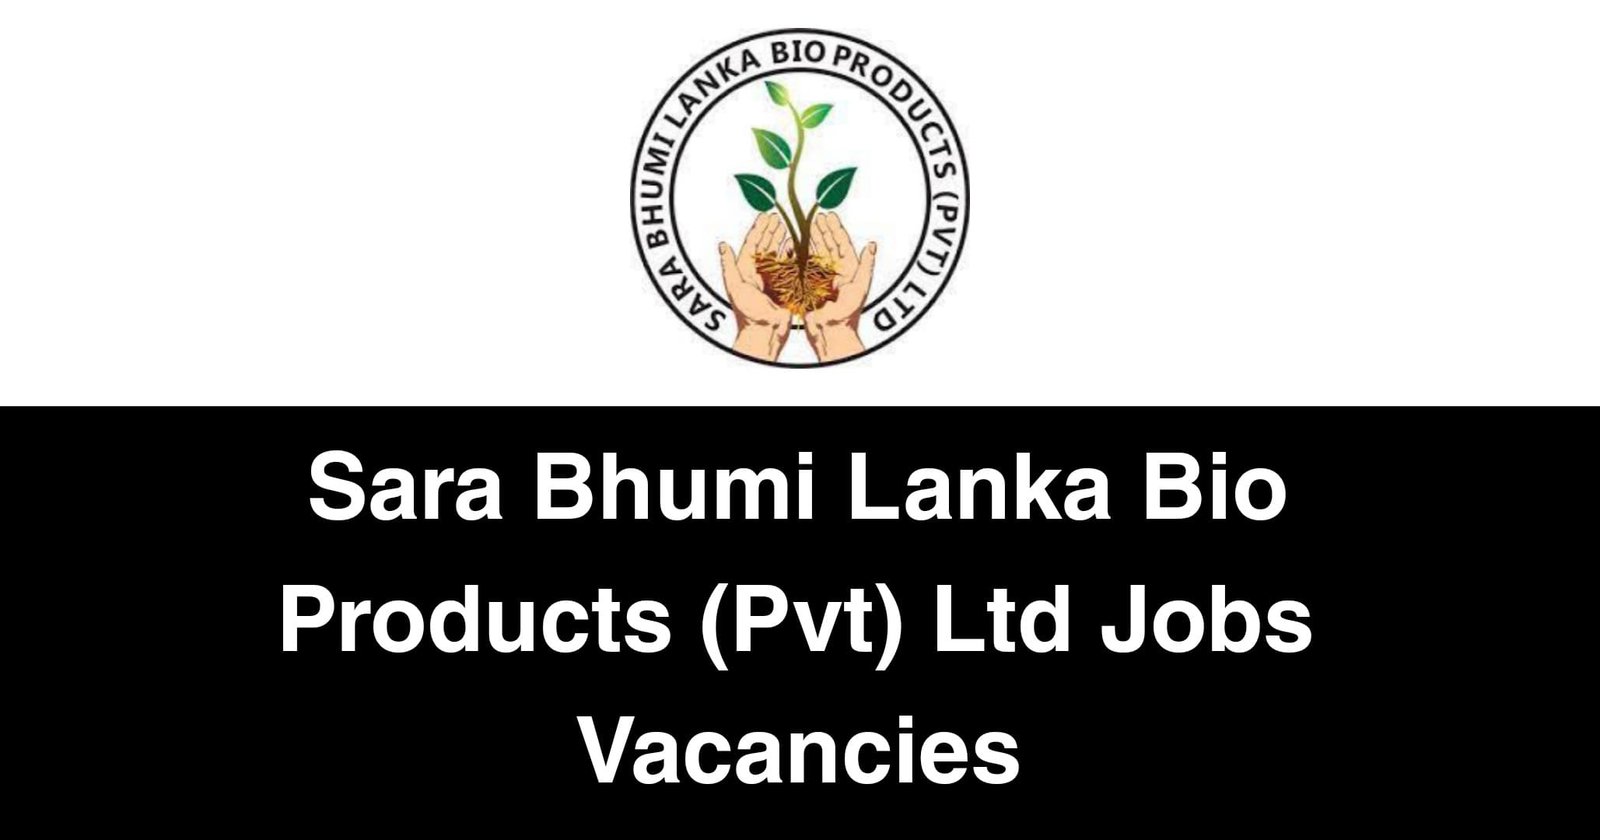 Sara Bhumi Lanka Bio Products (Pvt) Ltd Jobs Vacancies